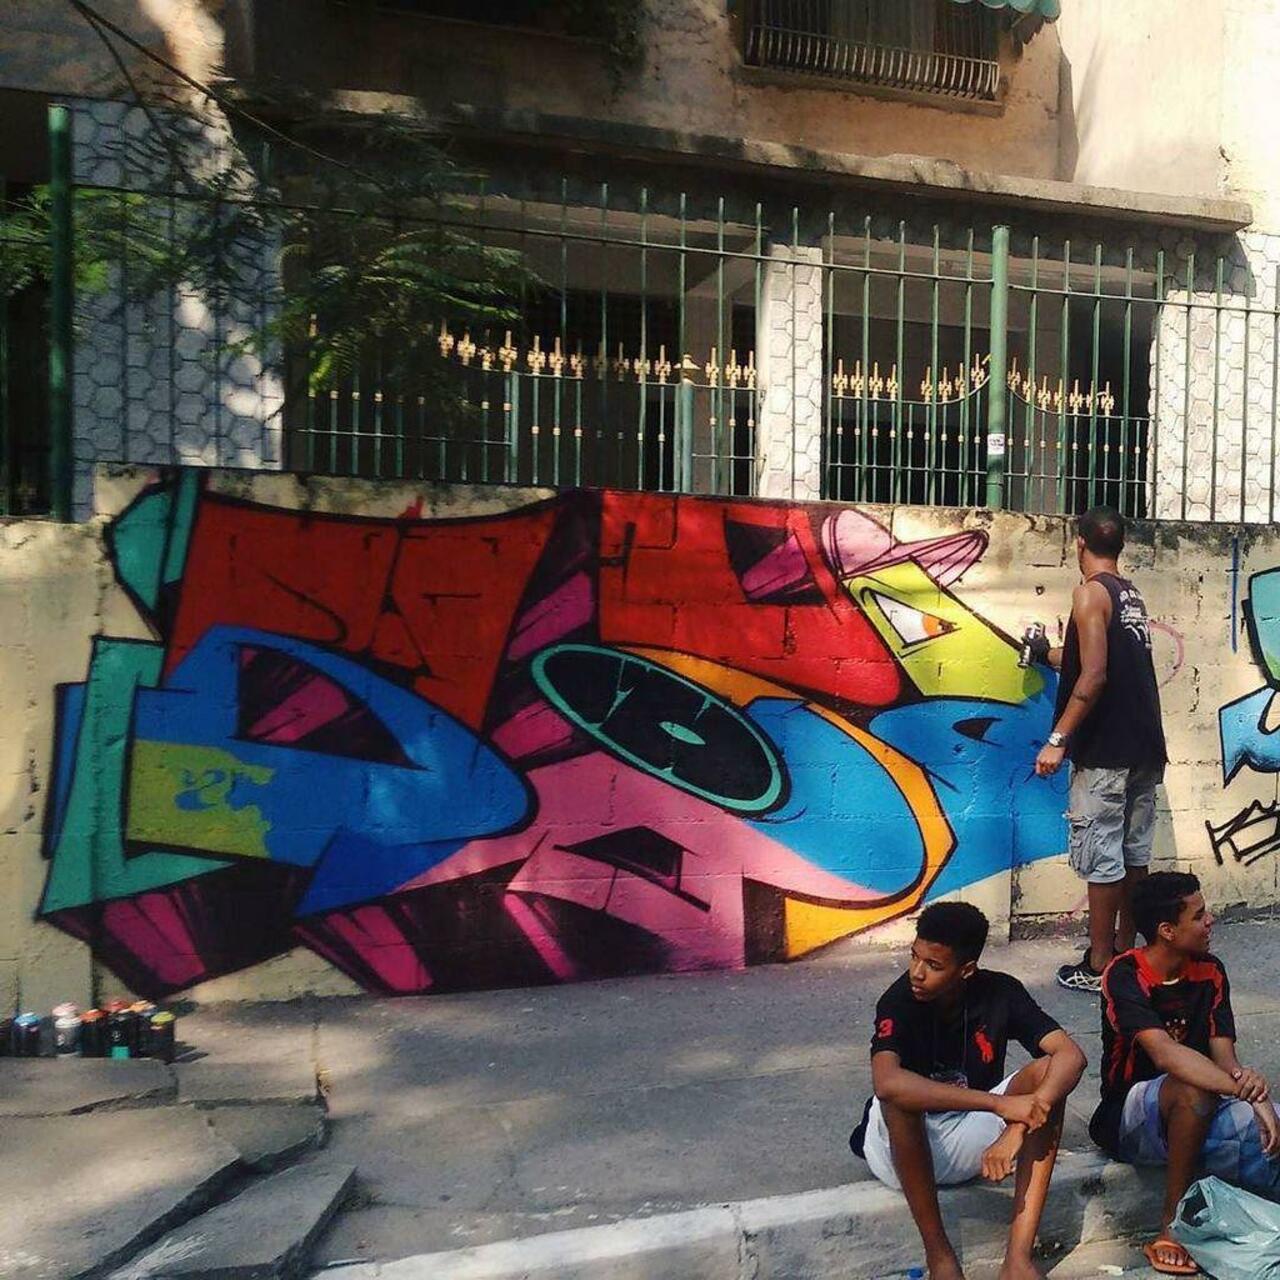 Action  Foto : @marcelocostadafonseca  #graffiti #graffitiart #streetart #art #arte #arteurbana #graffitikings … http://t.co/rrLsALhYfA